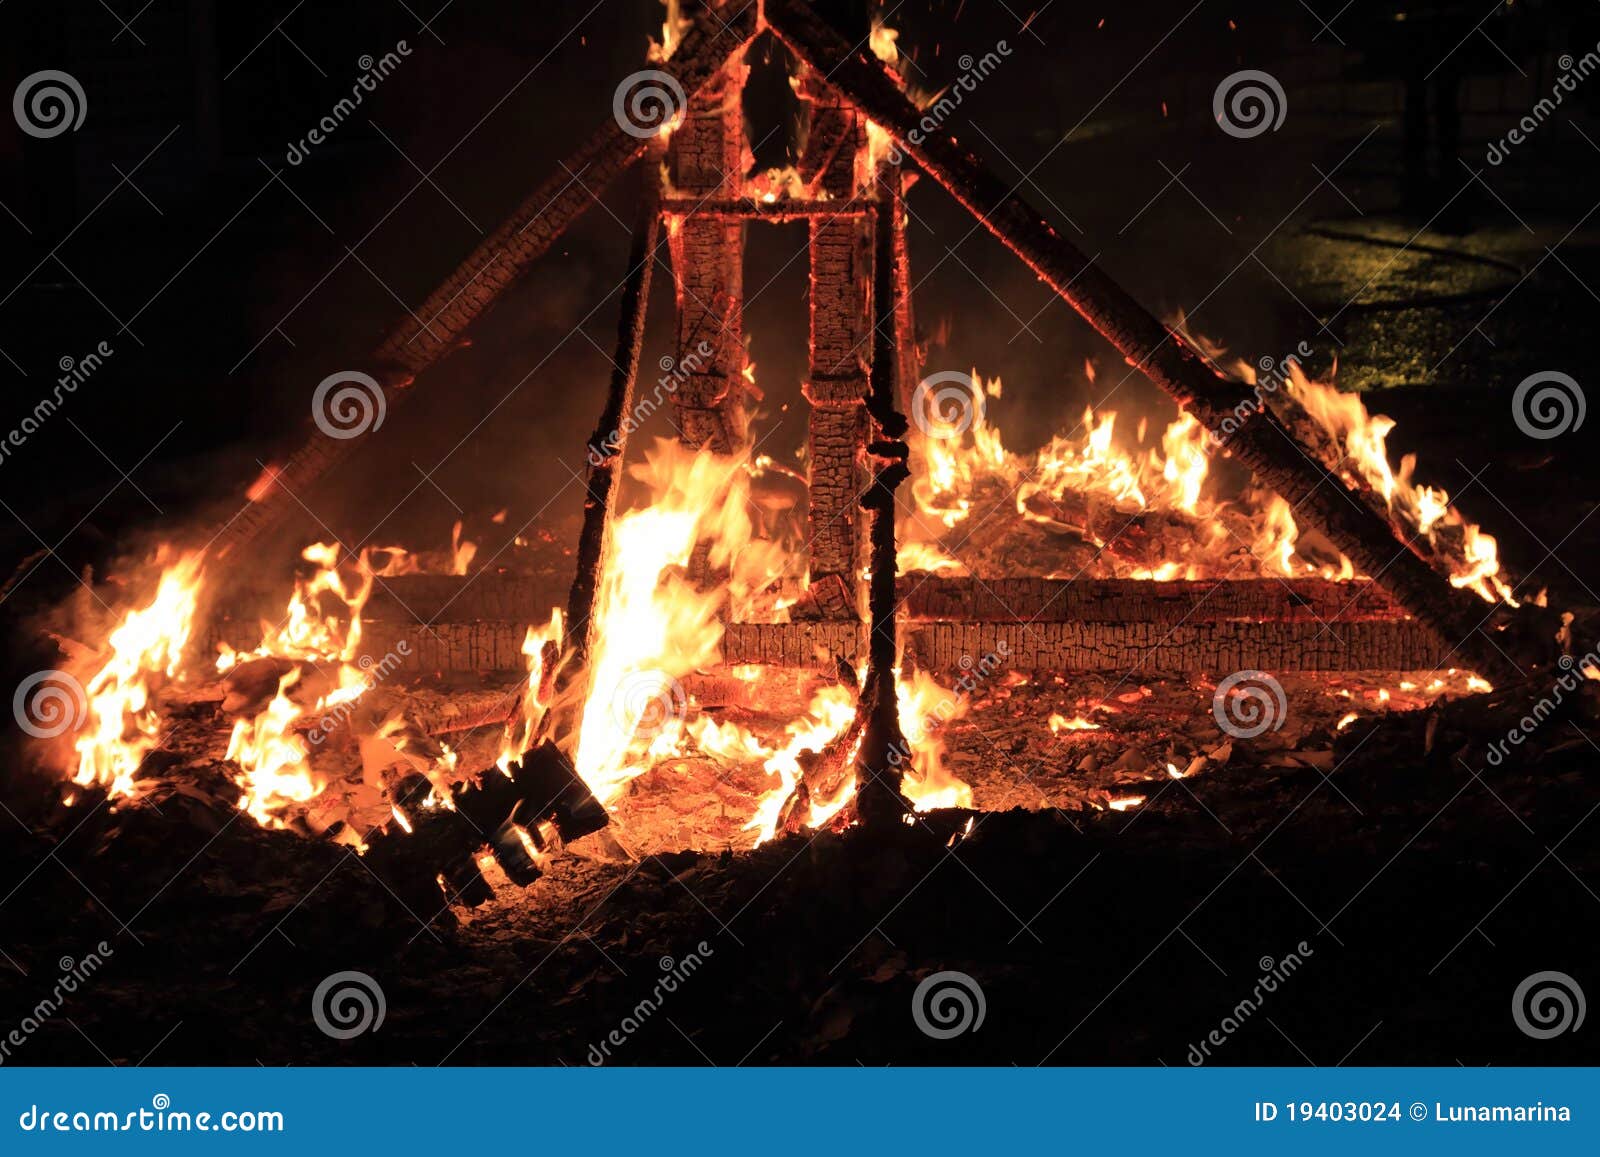 fallas fest fire burning figures in valencia spain